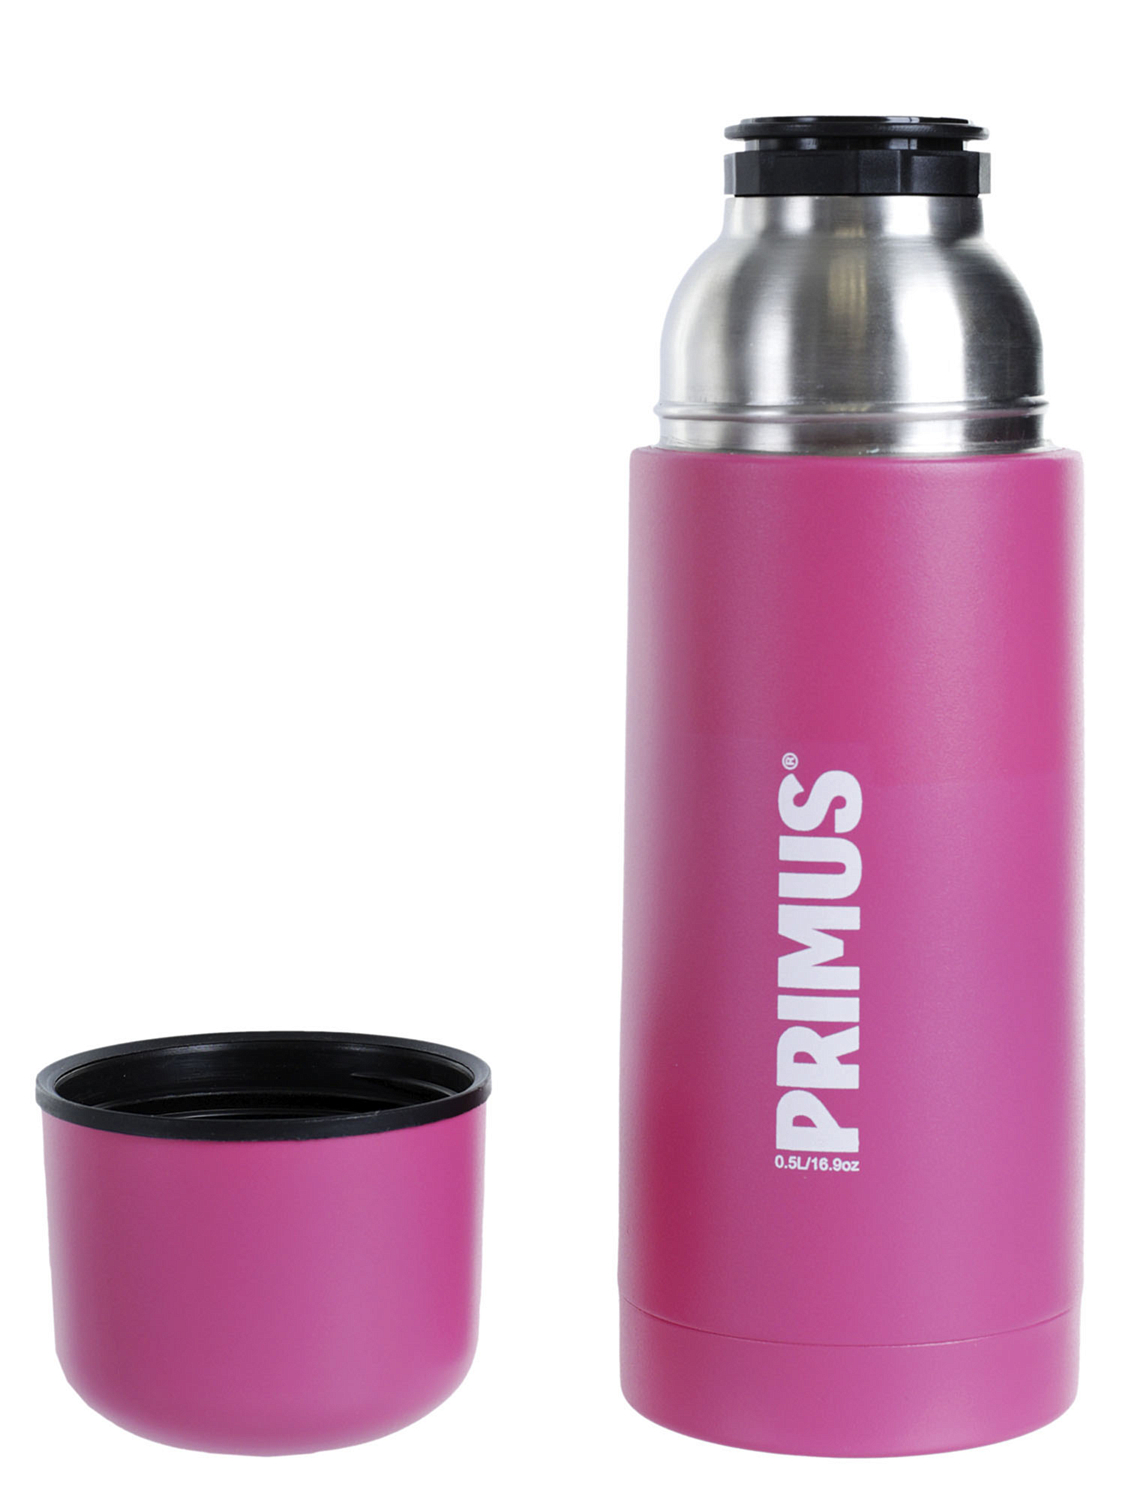 Термос Primus Vacuum bottle 0.5L Pink